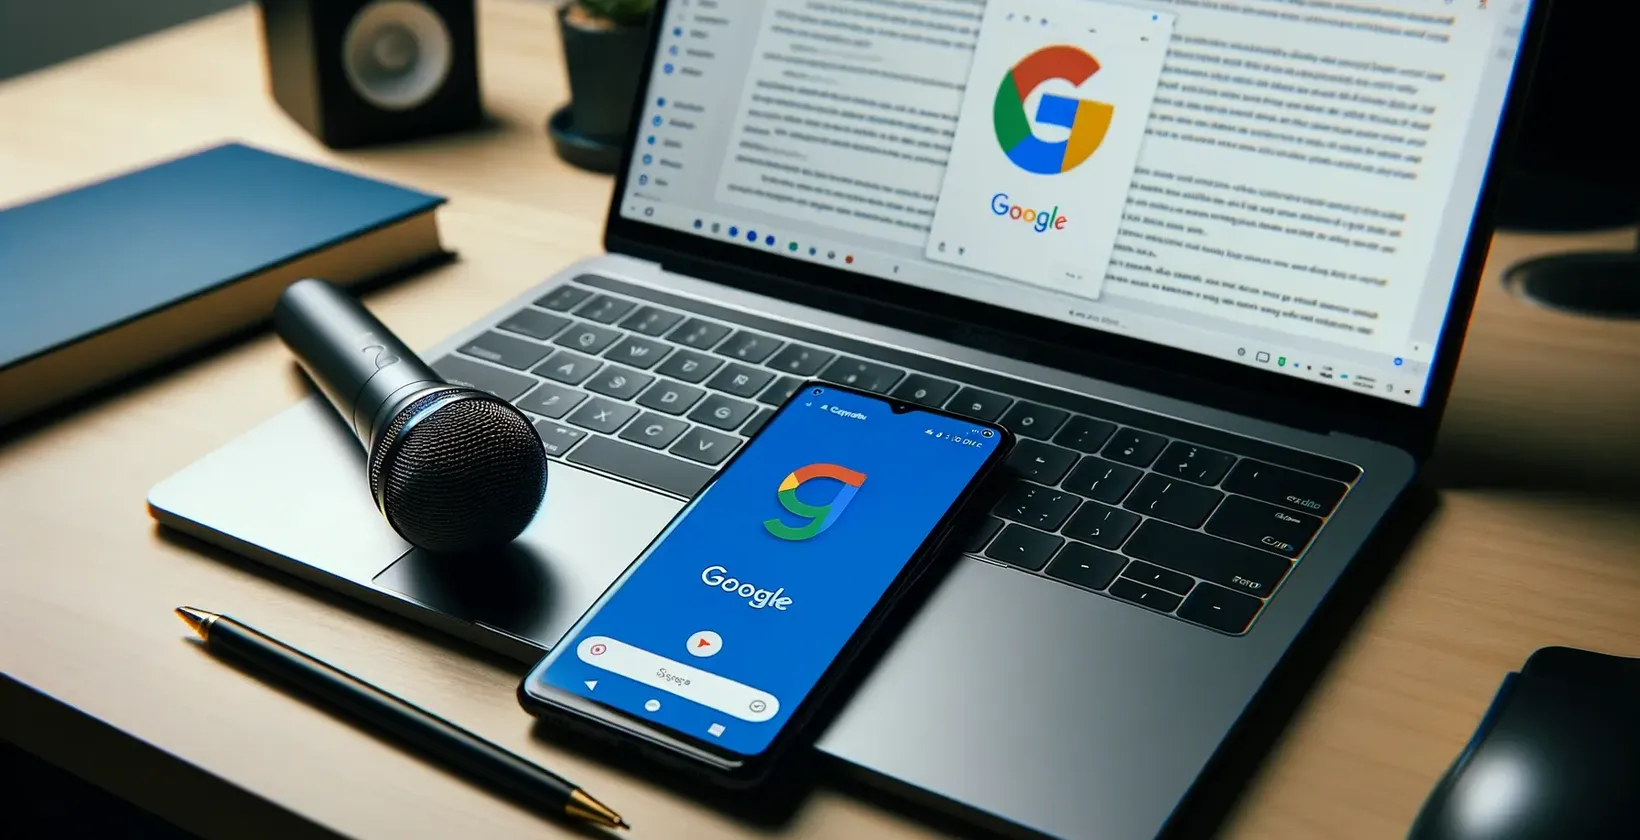 Google memfokuskan ruang kerja dengan komputer riba yang menunjukkan dokumen, telefon pintar dengan logo, mikrofon pada pad sentuh dan pen buku nota.